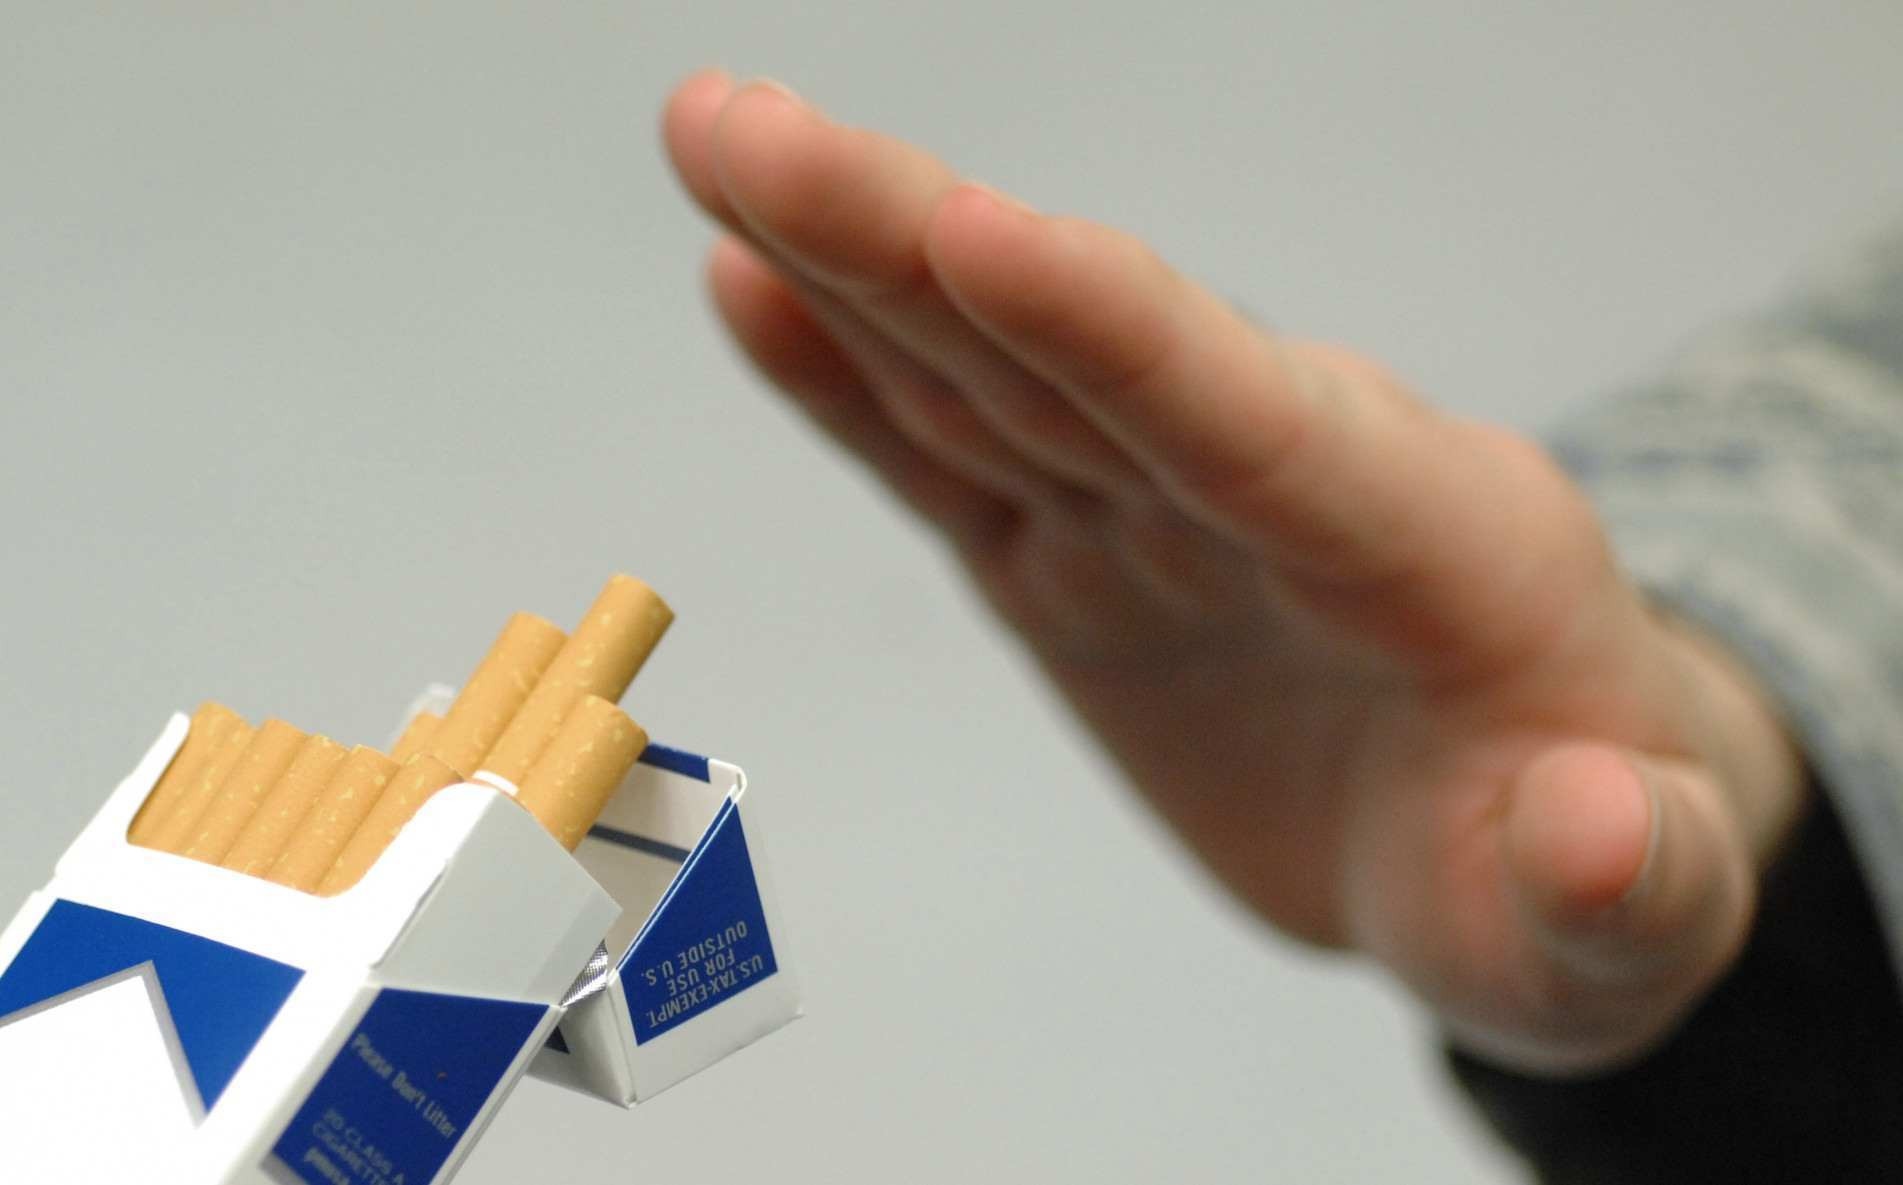 De 4,6 mil pessoas de todo o Pais que baixaram a cartilha até agora, 10% pararam de fumar.